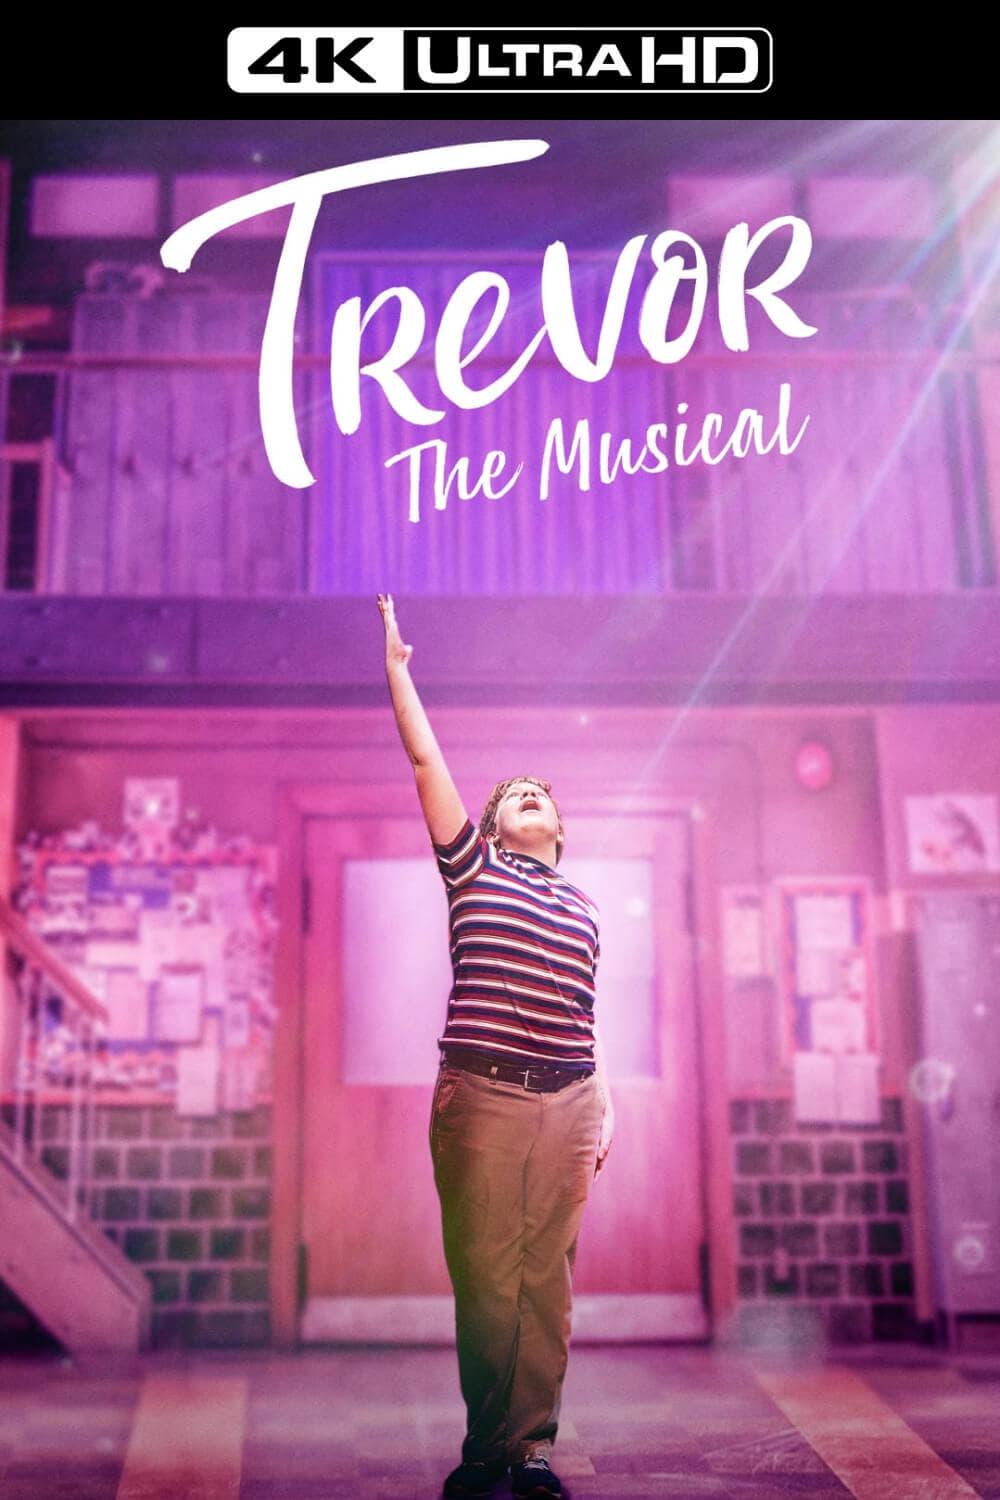 Trevor: The Musical poster